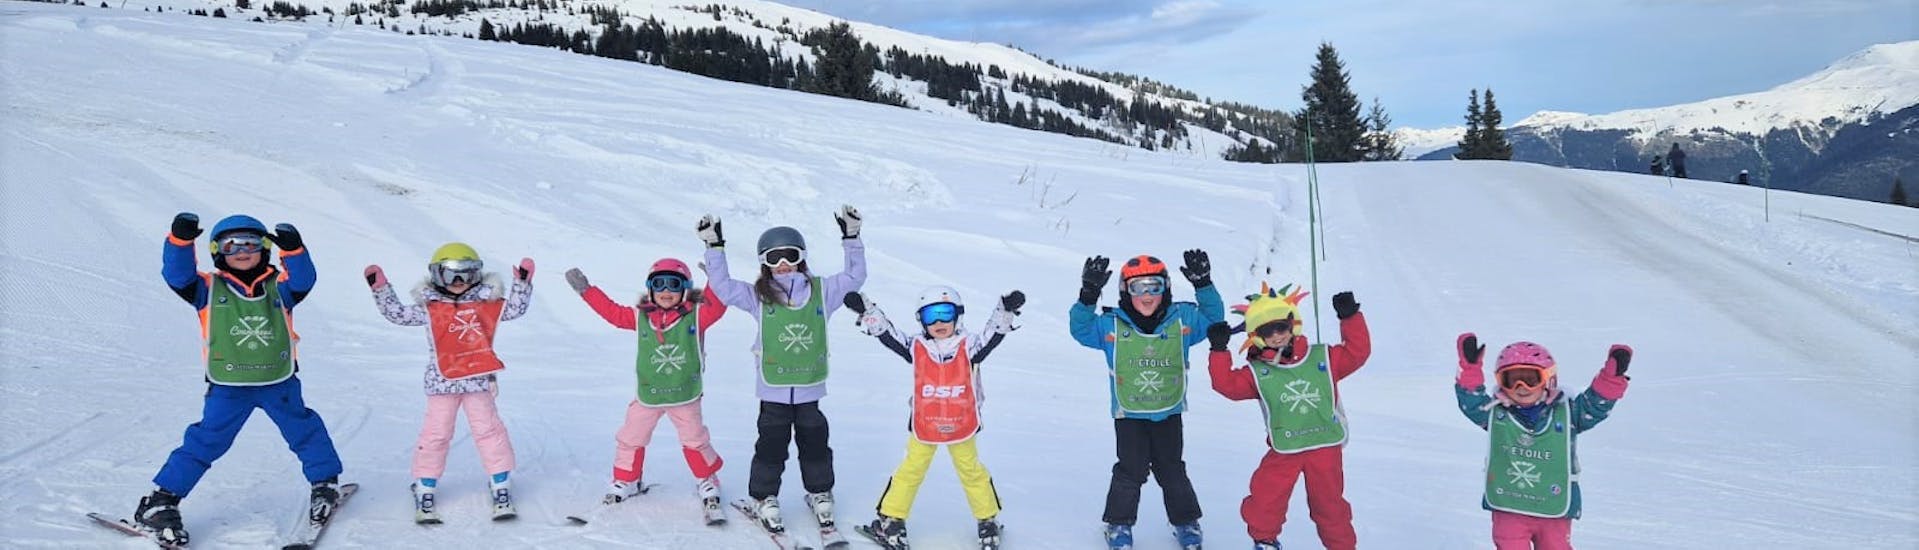 Clases de esquí para niños "Club Piou-Piou" (3-5 años).